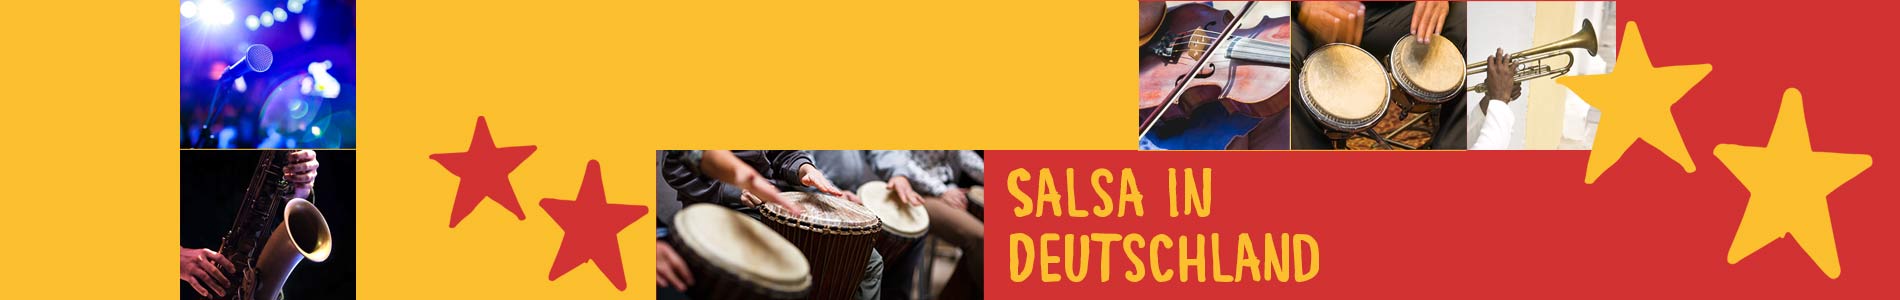 Salsa in Buchbach – Salsa lernen und tanzen, Tanzkurse, Partys, Veranstaltungen